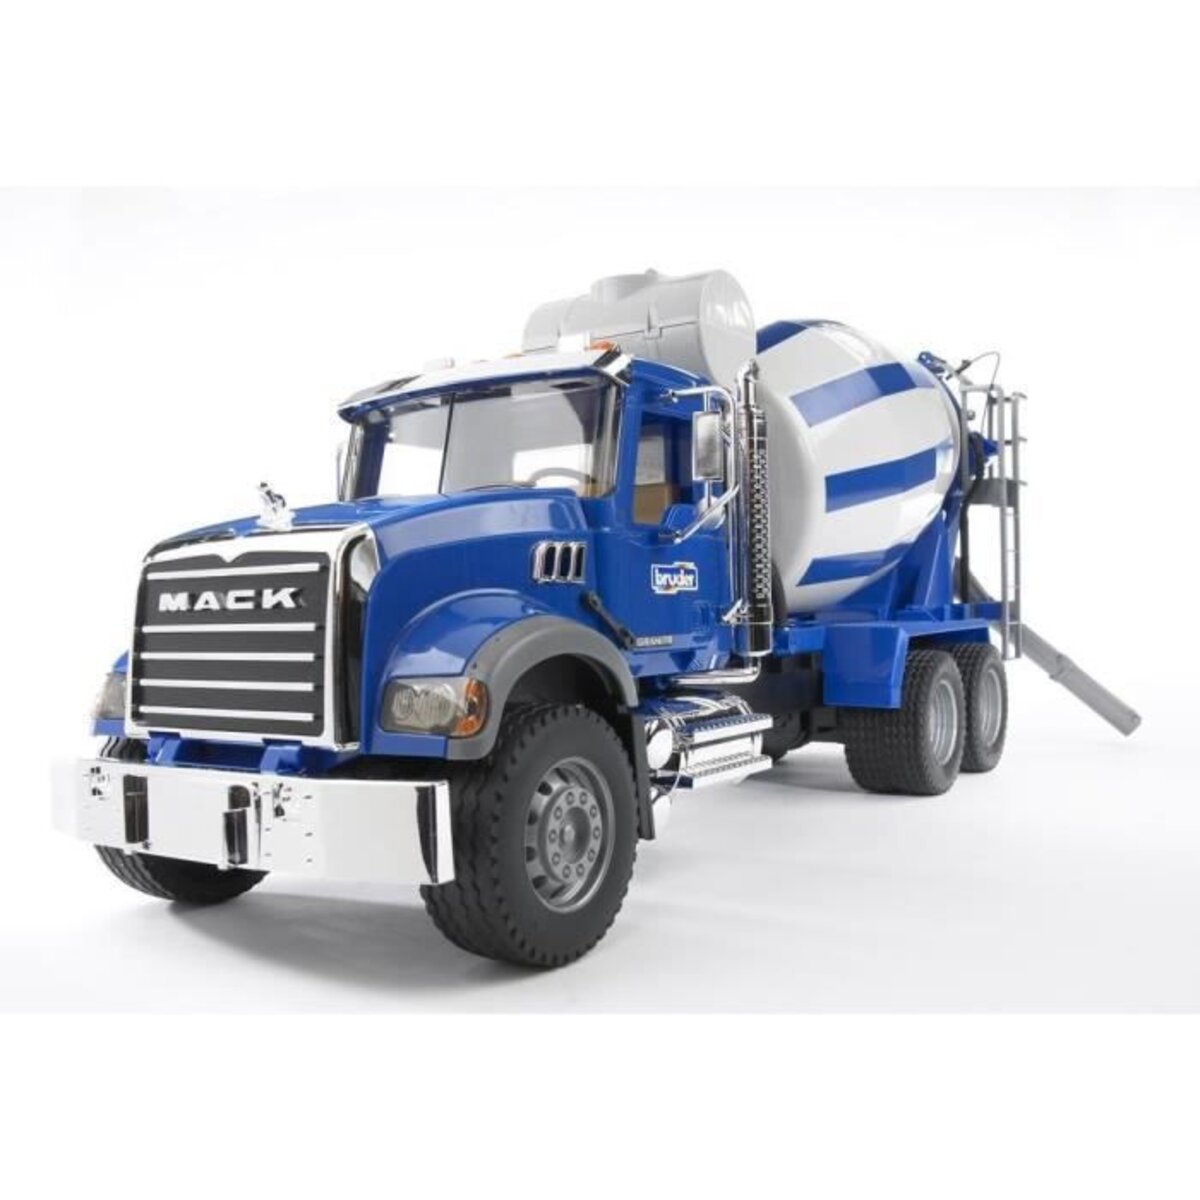 BRUDER - 2814 - Grand Camion toupie a beton MACK bleu - 65 cm - La Poste